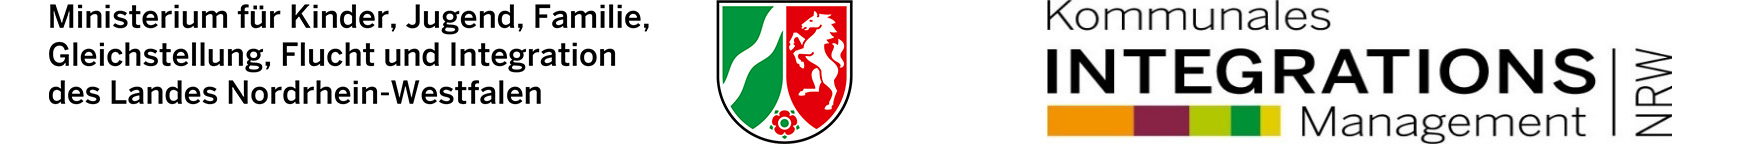 Logo des NRW-Ministeriums und des Kommunalen Integrationsmanagements